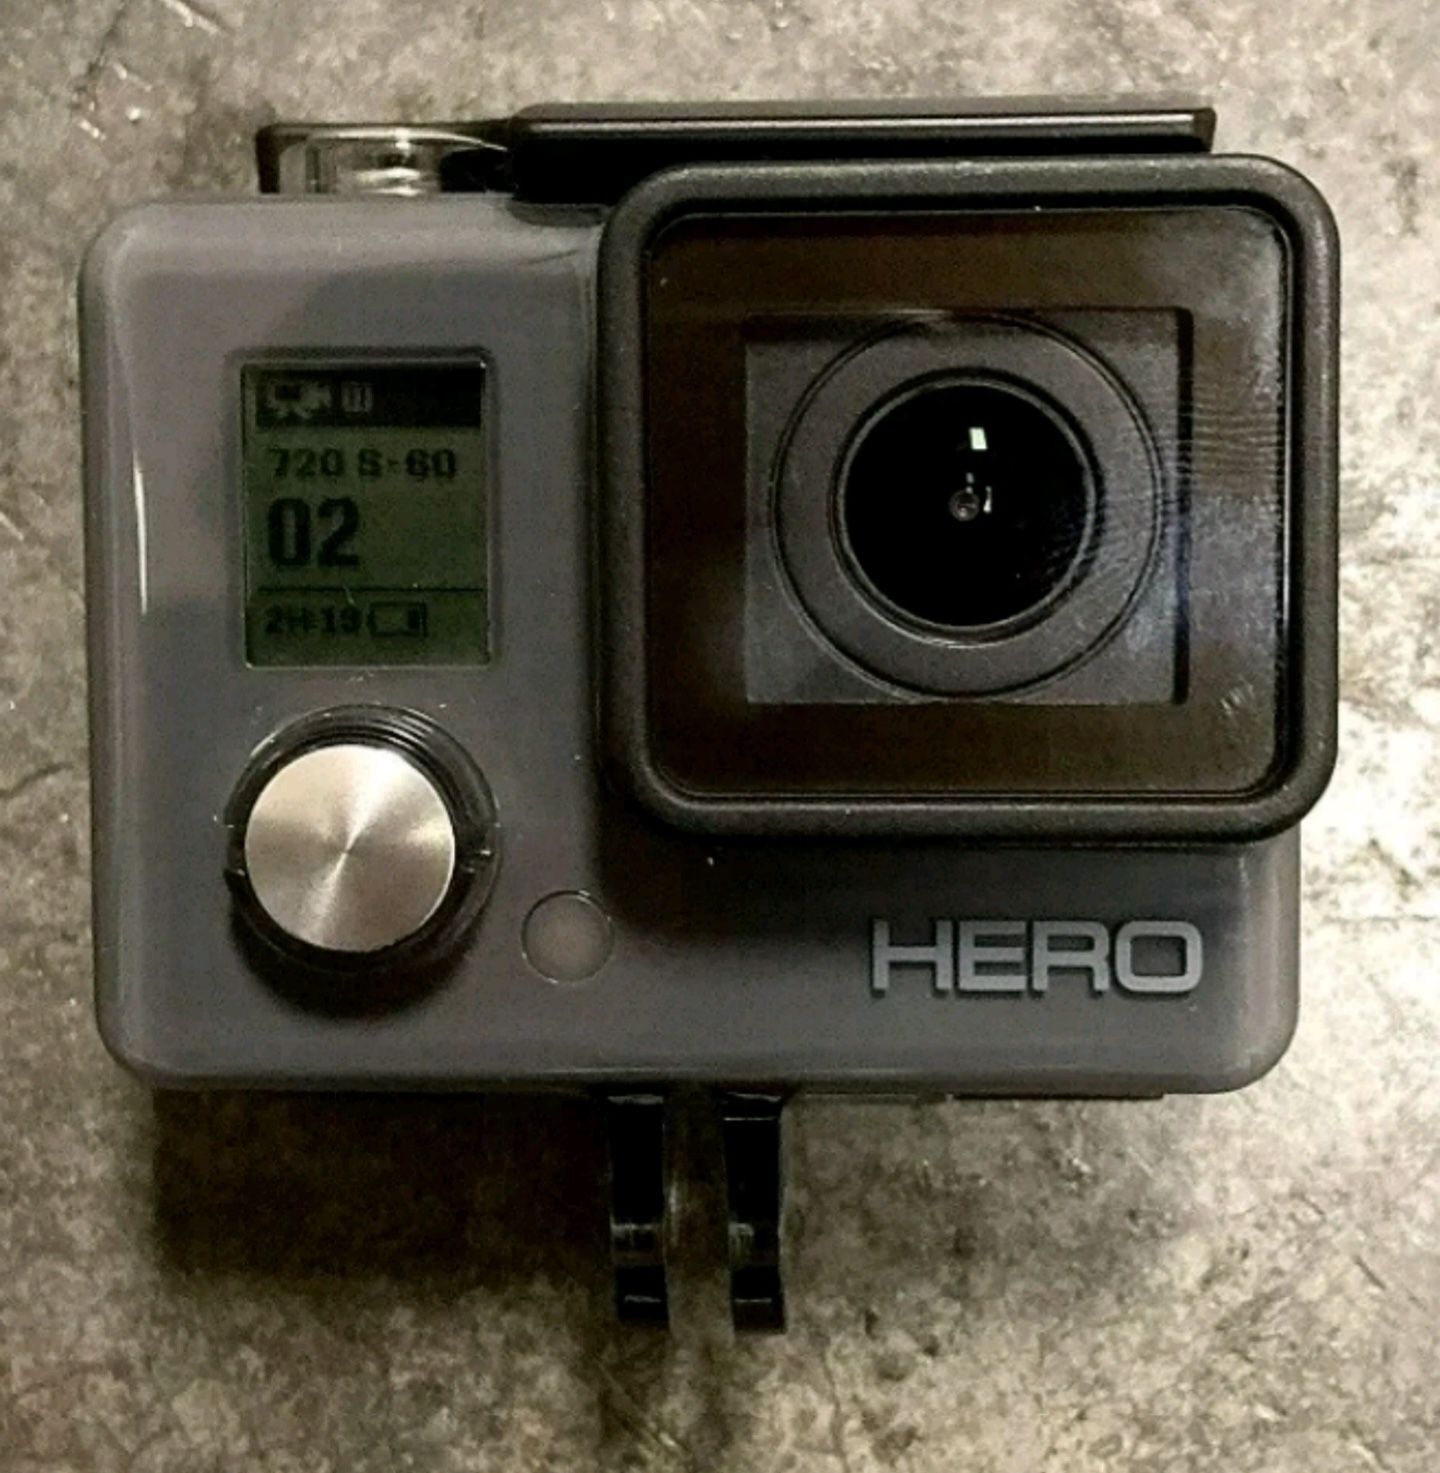 GoPro Hero